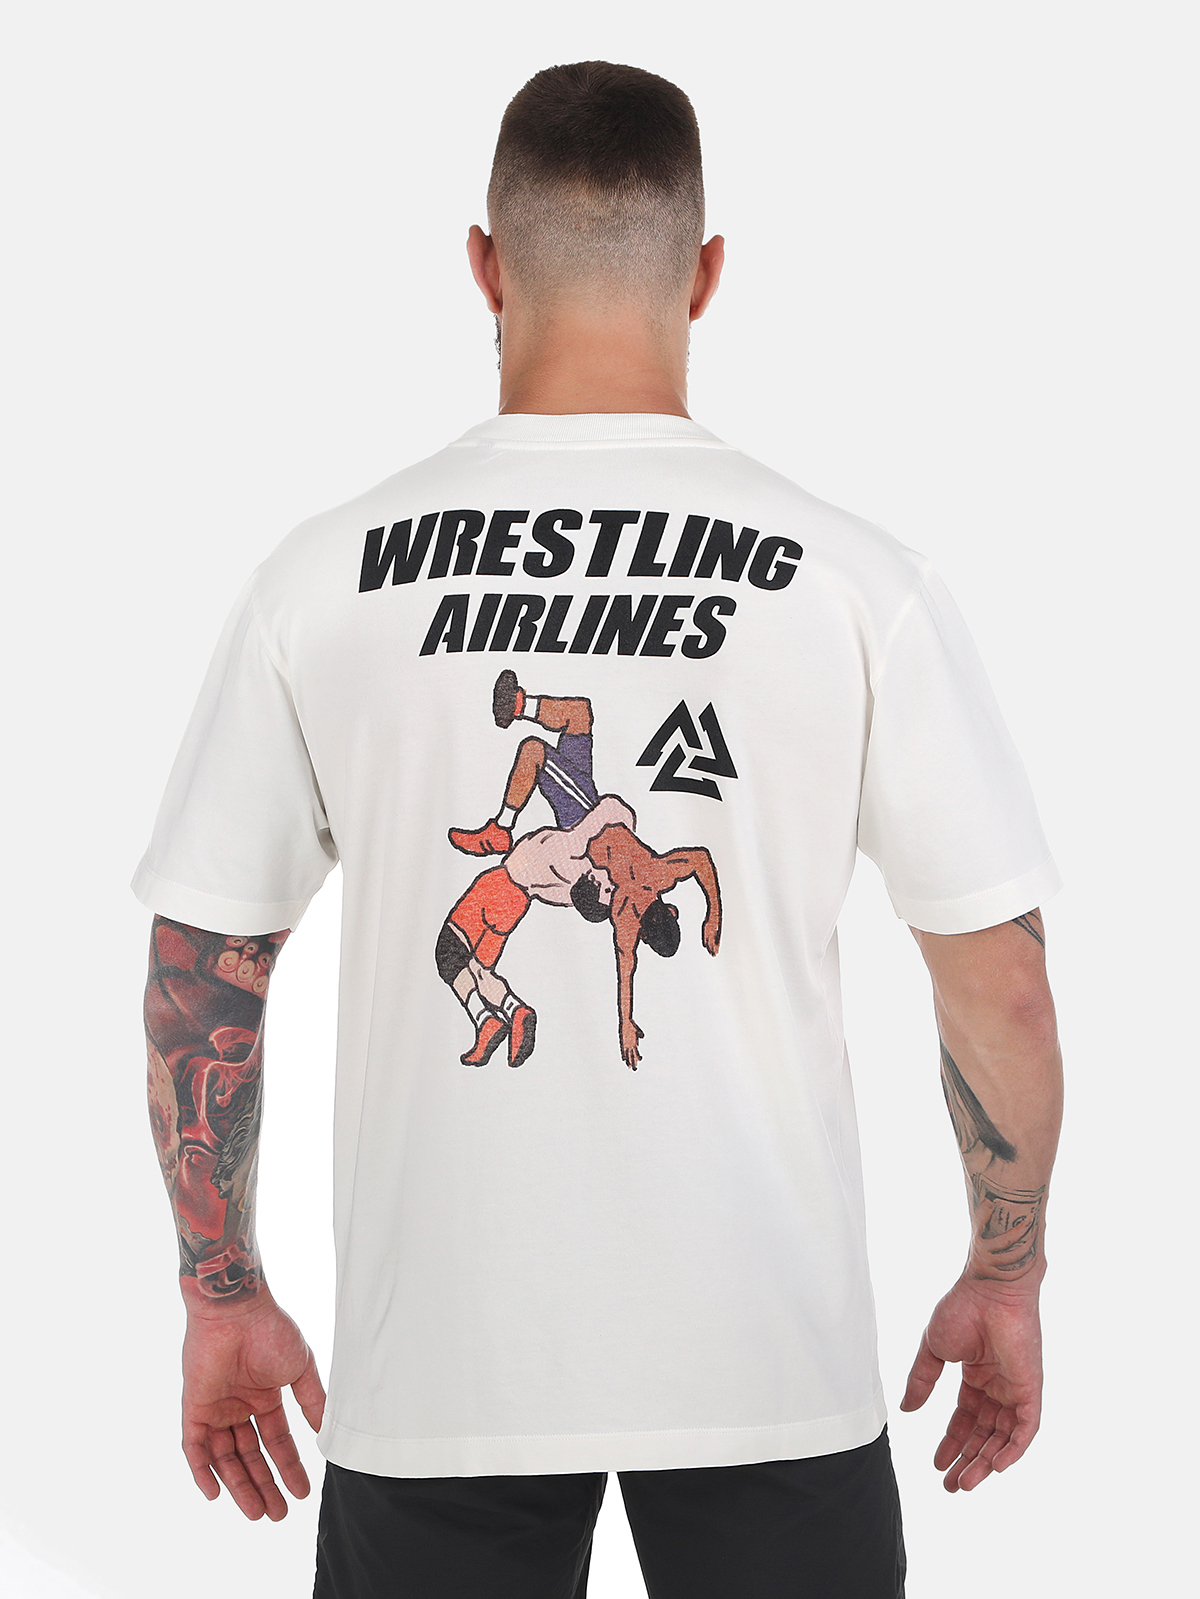 Peresvit Wrestling Airlines - White